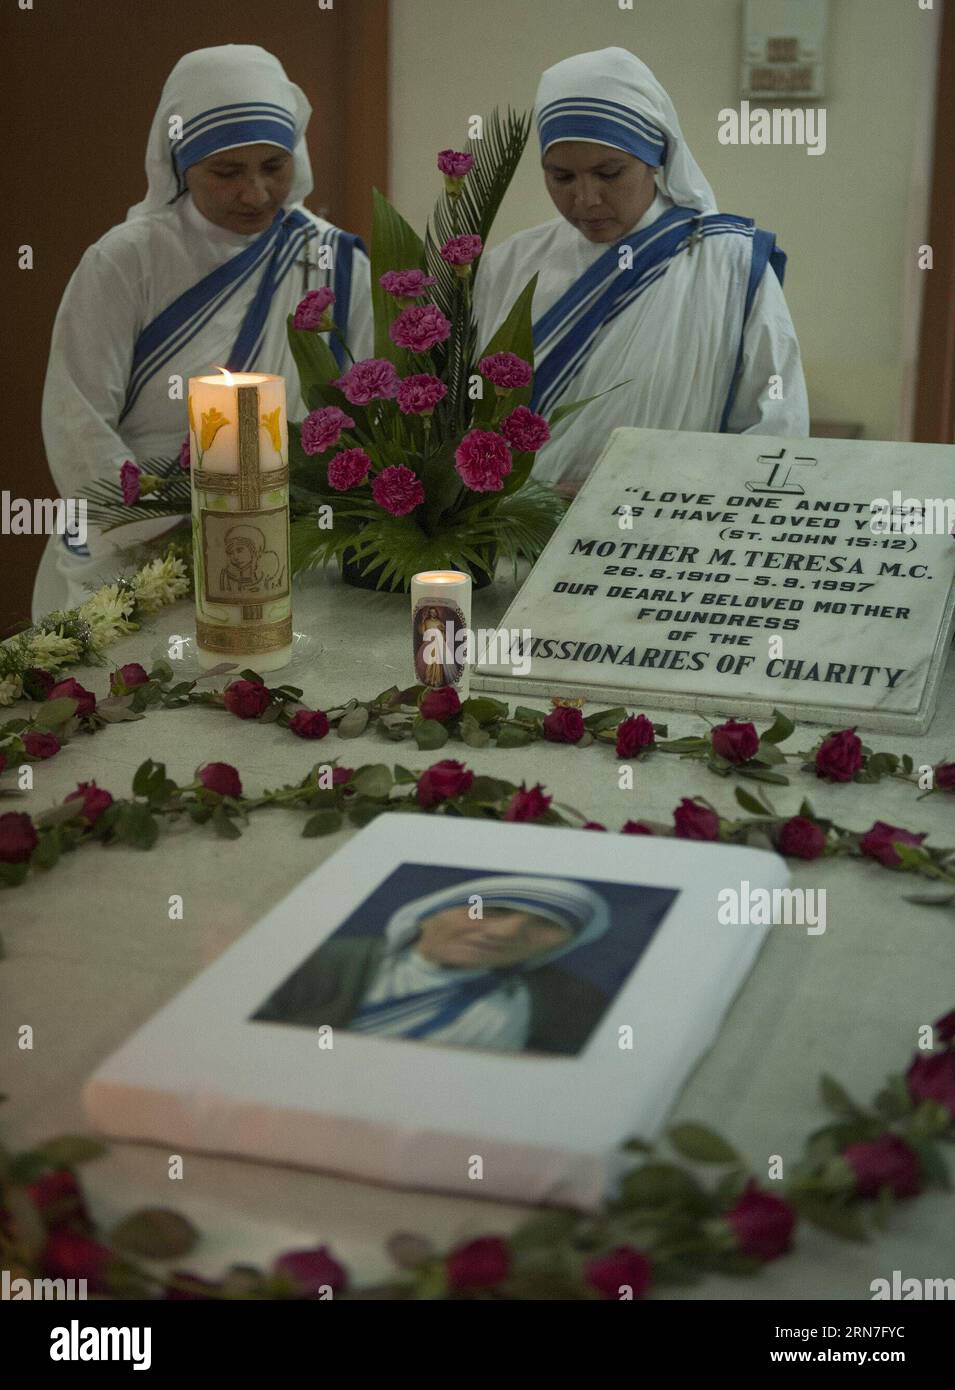 AKTUELLES ZEITGESCHEHEN Gedenken an Mutter Teresa in Indien (150905) -- KOLKATA, 5. September 2015 -- Nonnen der Missionare der Liebe beten während einer Gedenkfeier zum 18. Todestag von Mutter Teresa in Kalkutta, Hauptstadt eines ostindischen Bundesstaates Westbengalen, 5. September 2015. Die Friedensnobelpreisträgerin Mutter Teresa starb am 5. September 1997. ) INDIEN-KOLKATA-MUTTER TERESA-TOD JAHRESTAG TumpaxMondal PUBLICATIONxNOTxINxCHN Nachrichten aktuelle Ereignisse Erinnerung an Mutter Teresa in Indien 150905 Kolkata 5. September 2015 Nonnen der Missionare der Liebe beten während einer Gedenkfeier zum 18. September Stockfoto